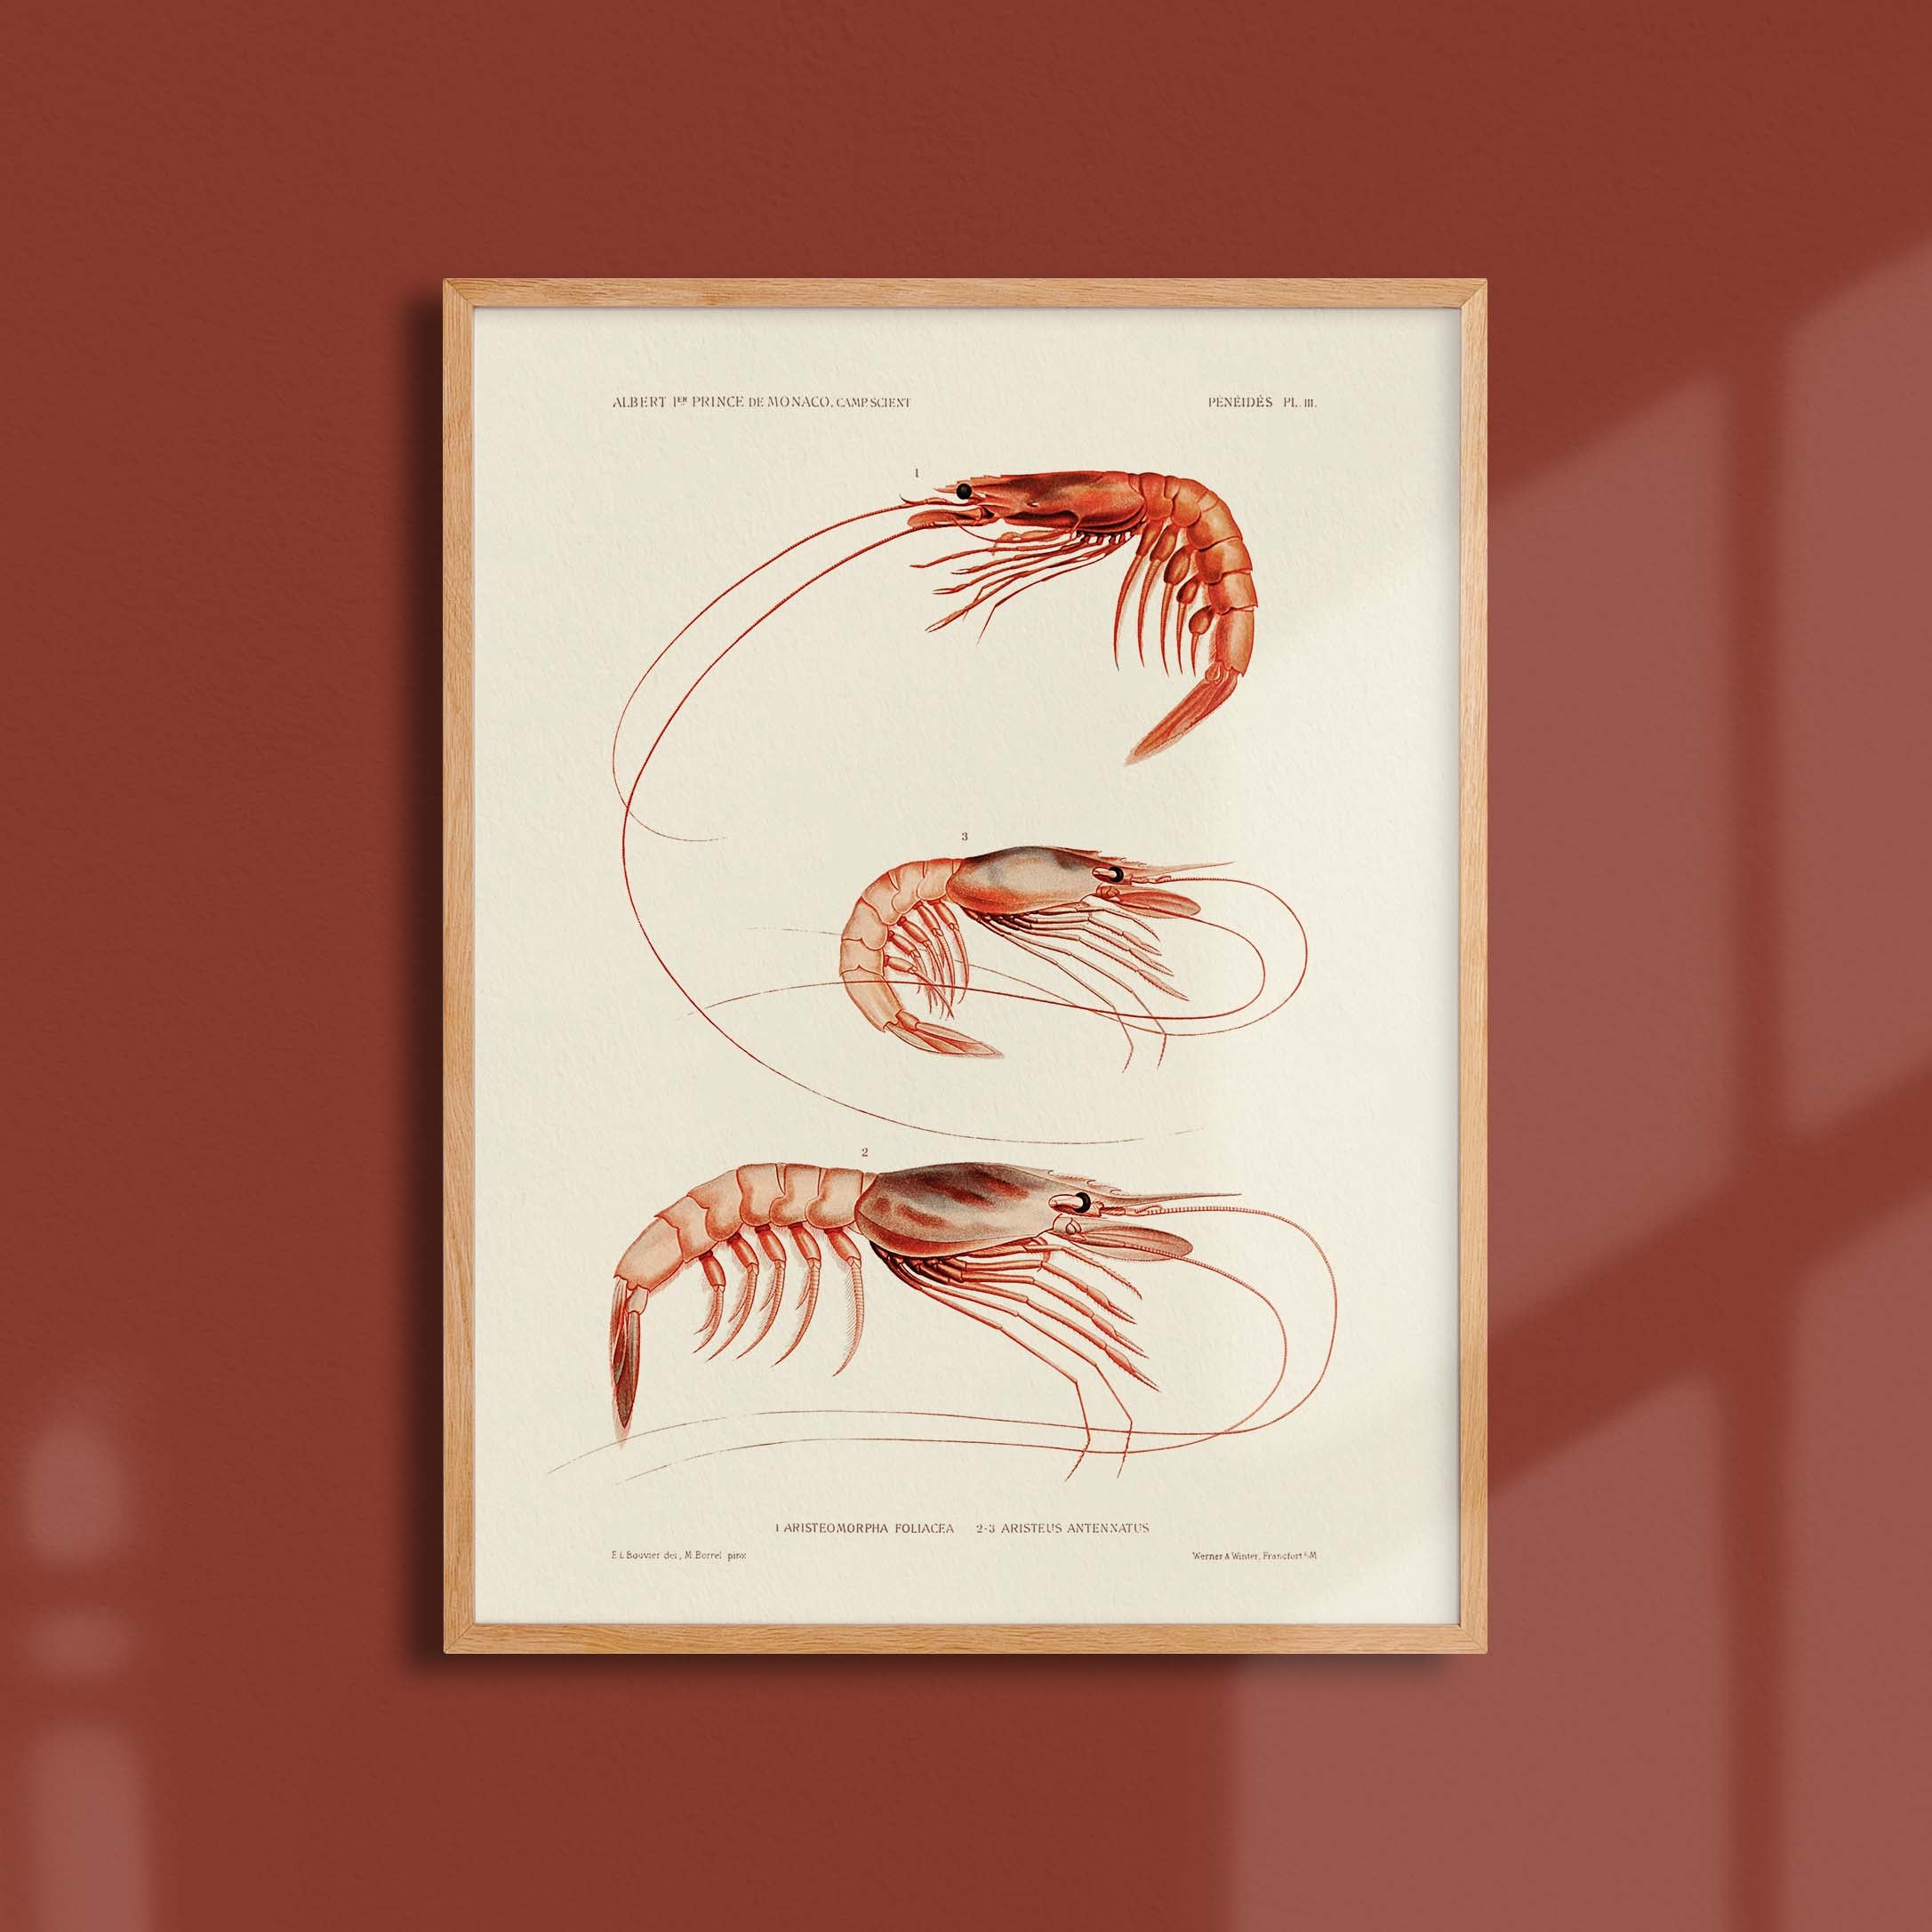 Affiche océan - Les crevettes-oneart.fr